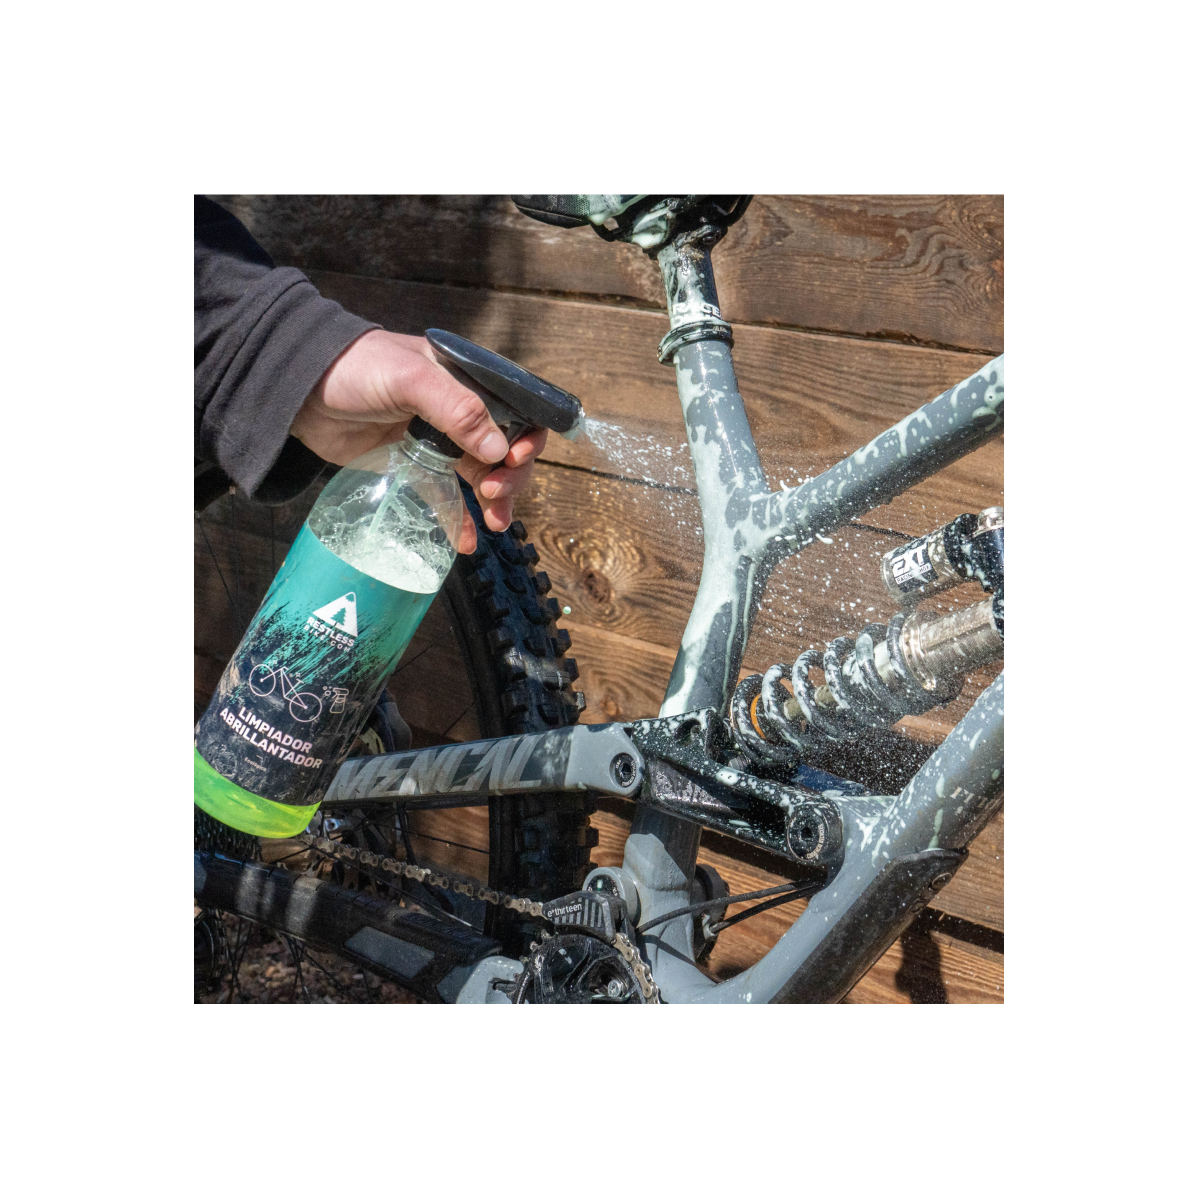 Limpiador de bici ecológico y biodegradable | Limpiador abrillantador Restless Bike para la bicicleta